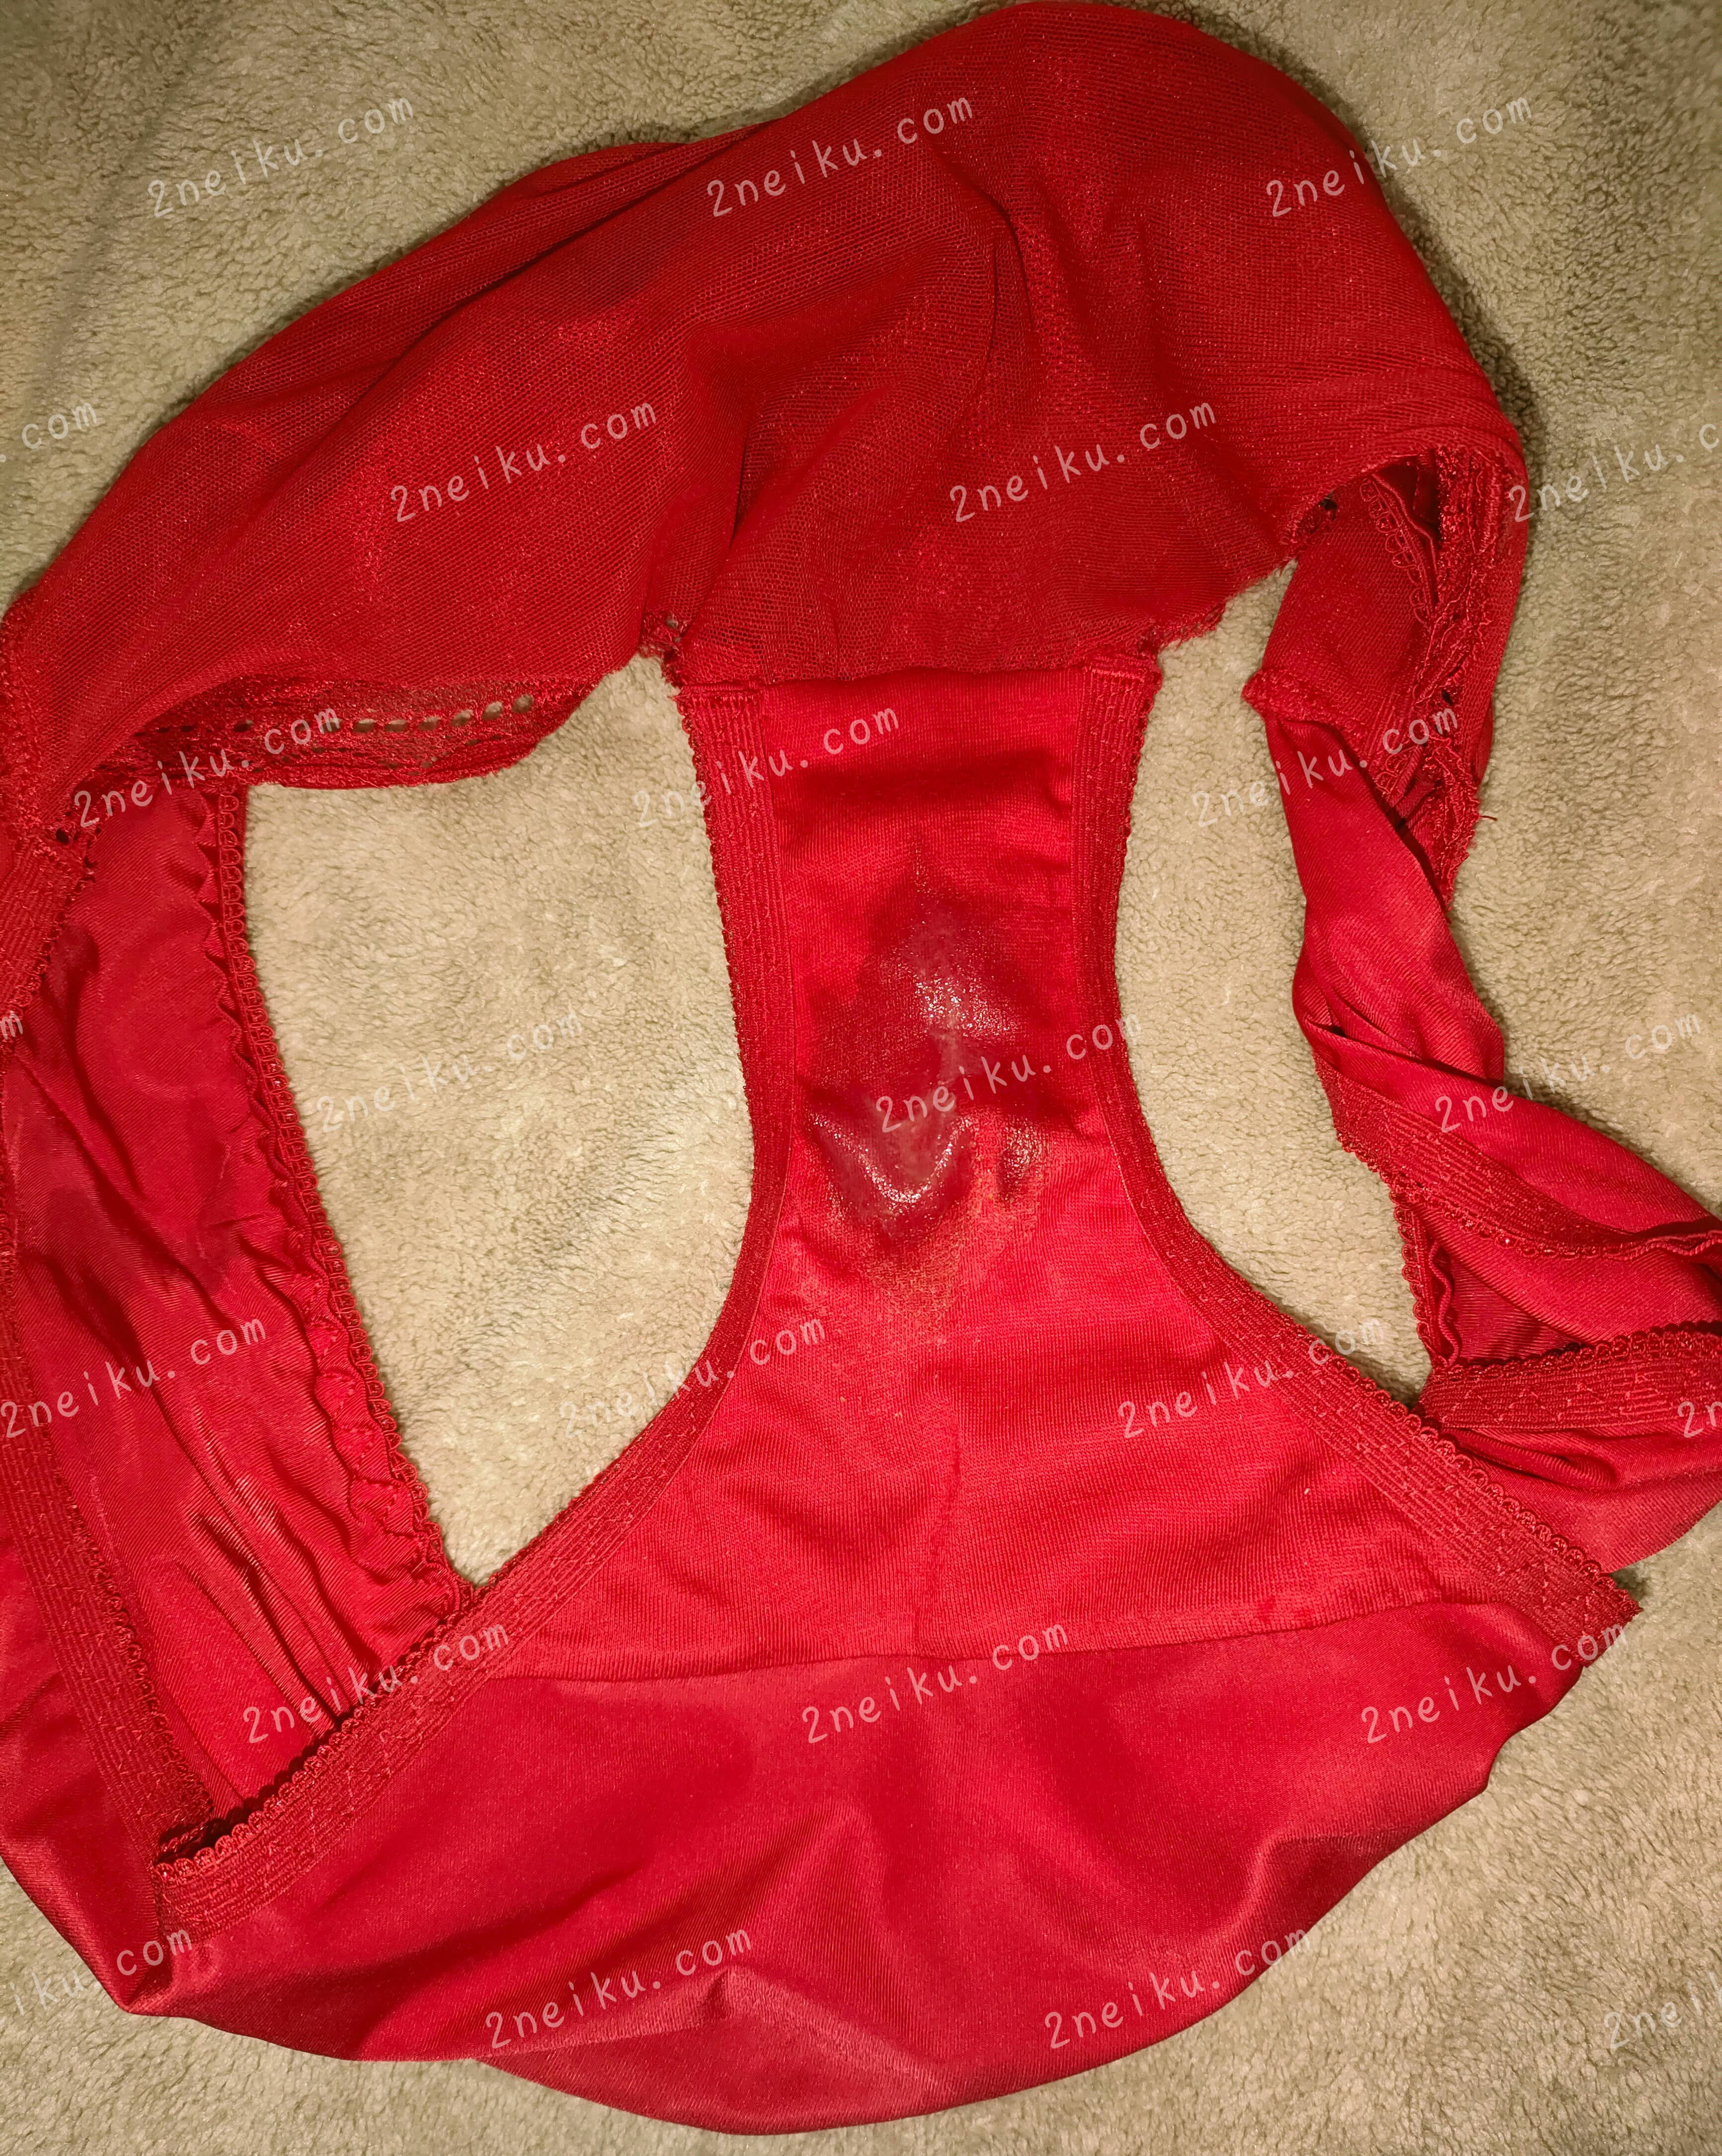 大红色纯棉加性感网纱原味内裤裆部痕迹照片